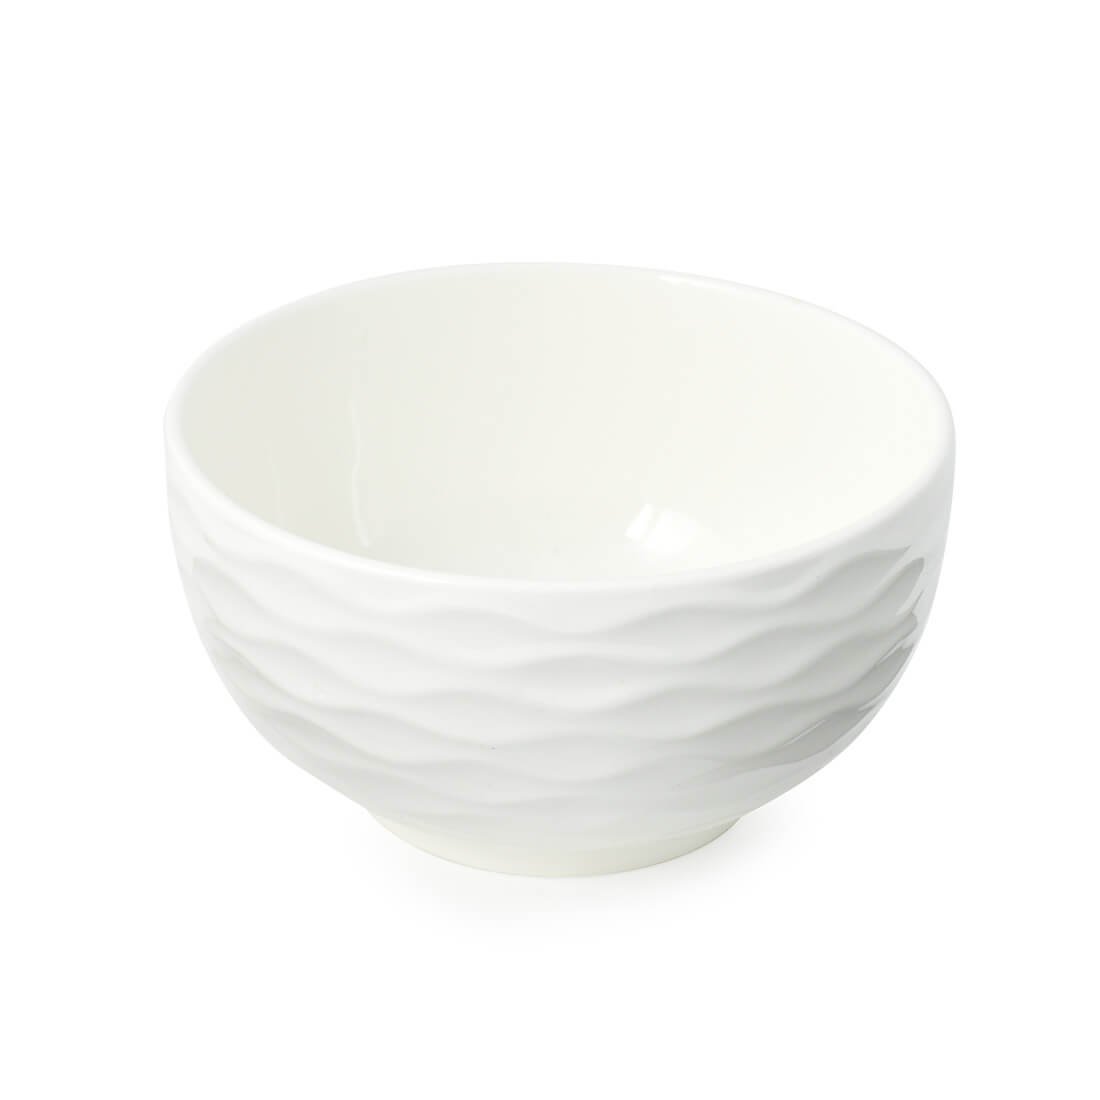 Bowl Tigela de Porcelana Branco 400ml Kit com 2 Peças - 3